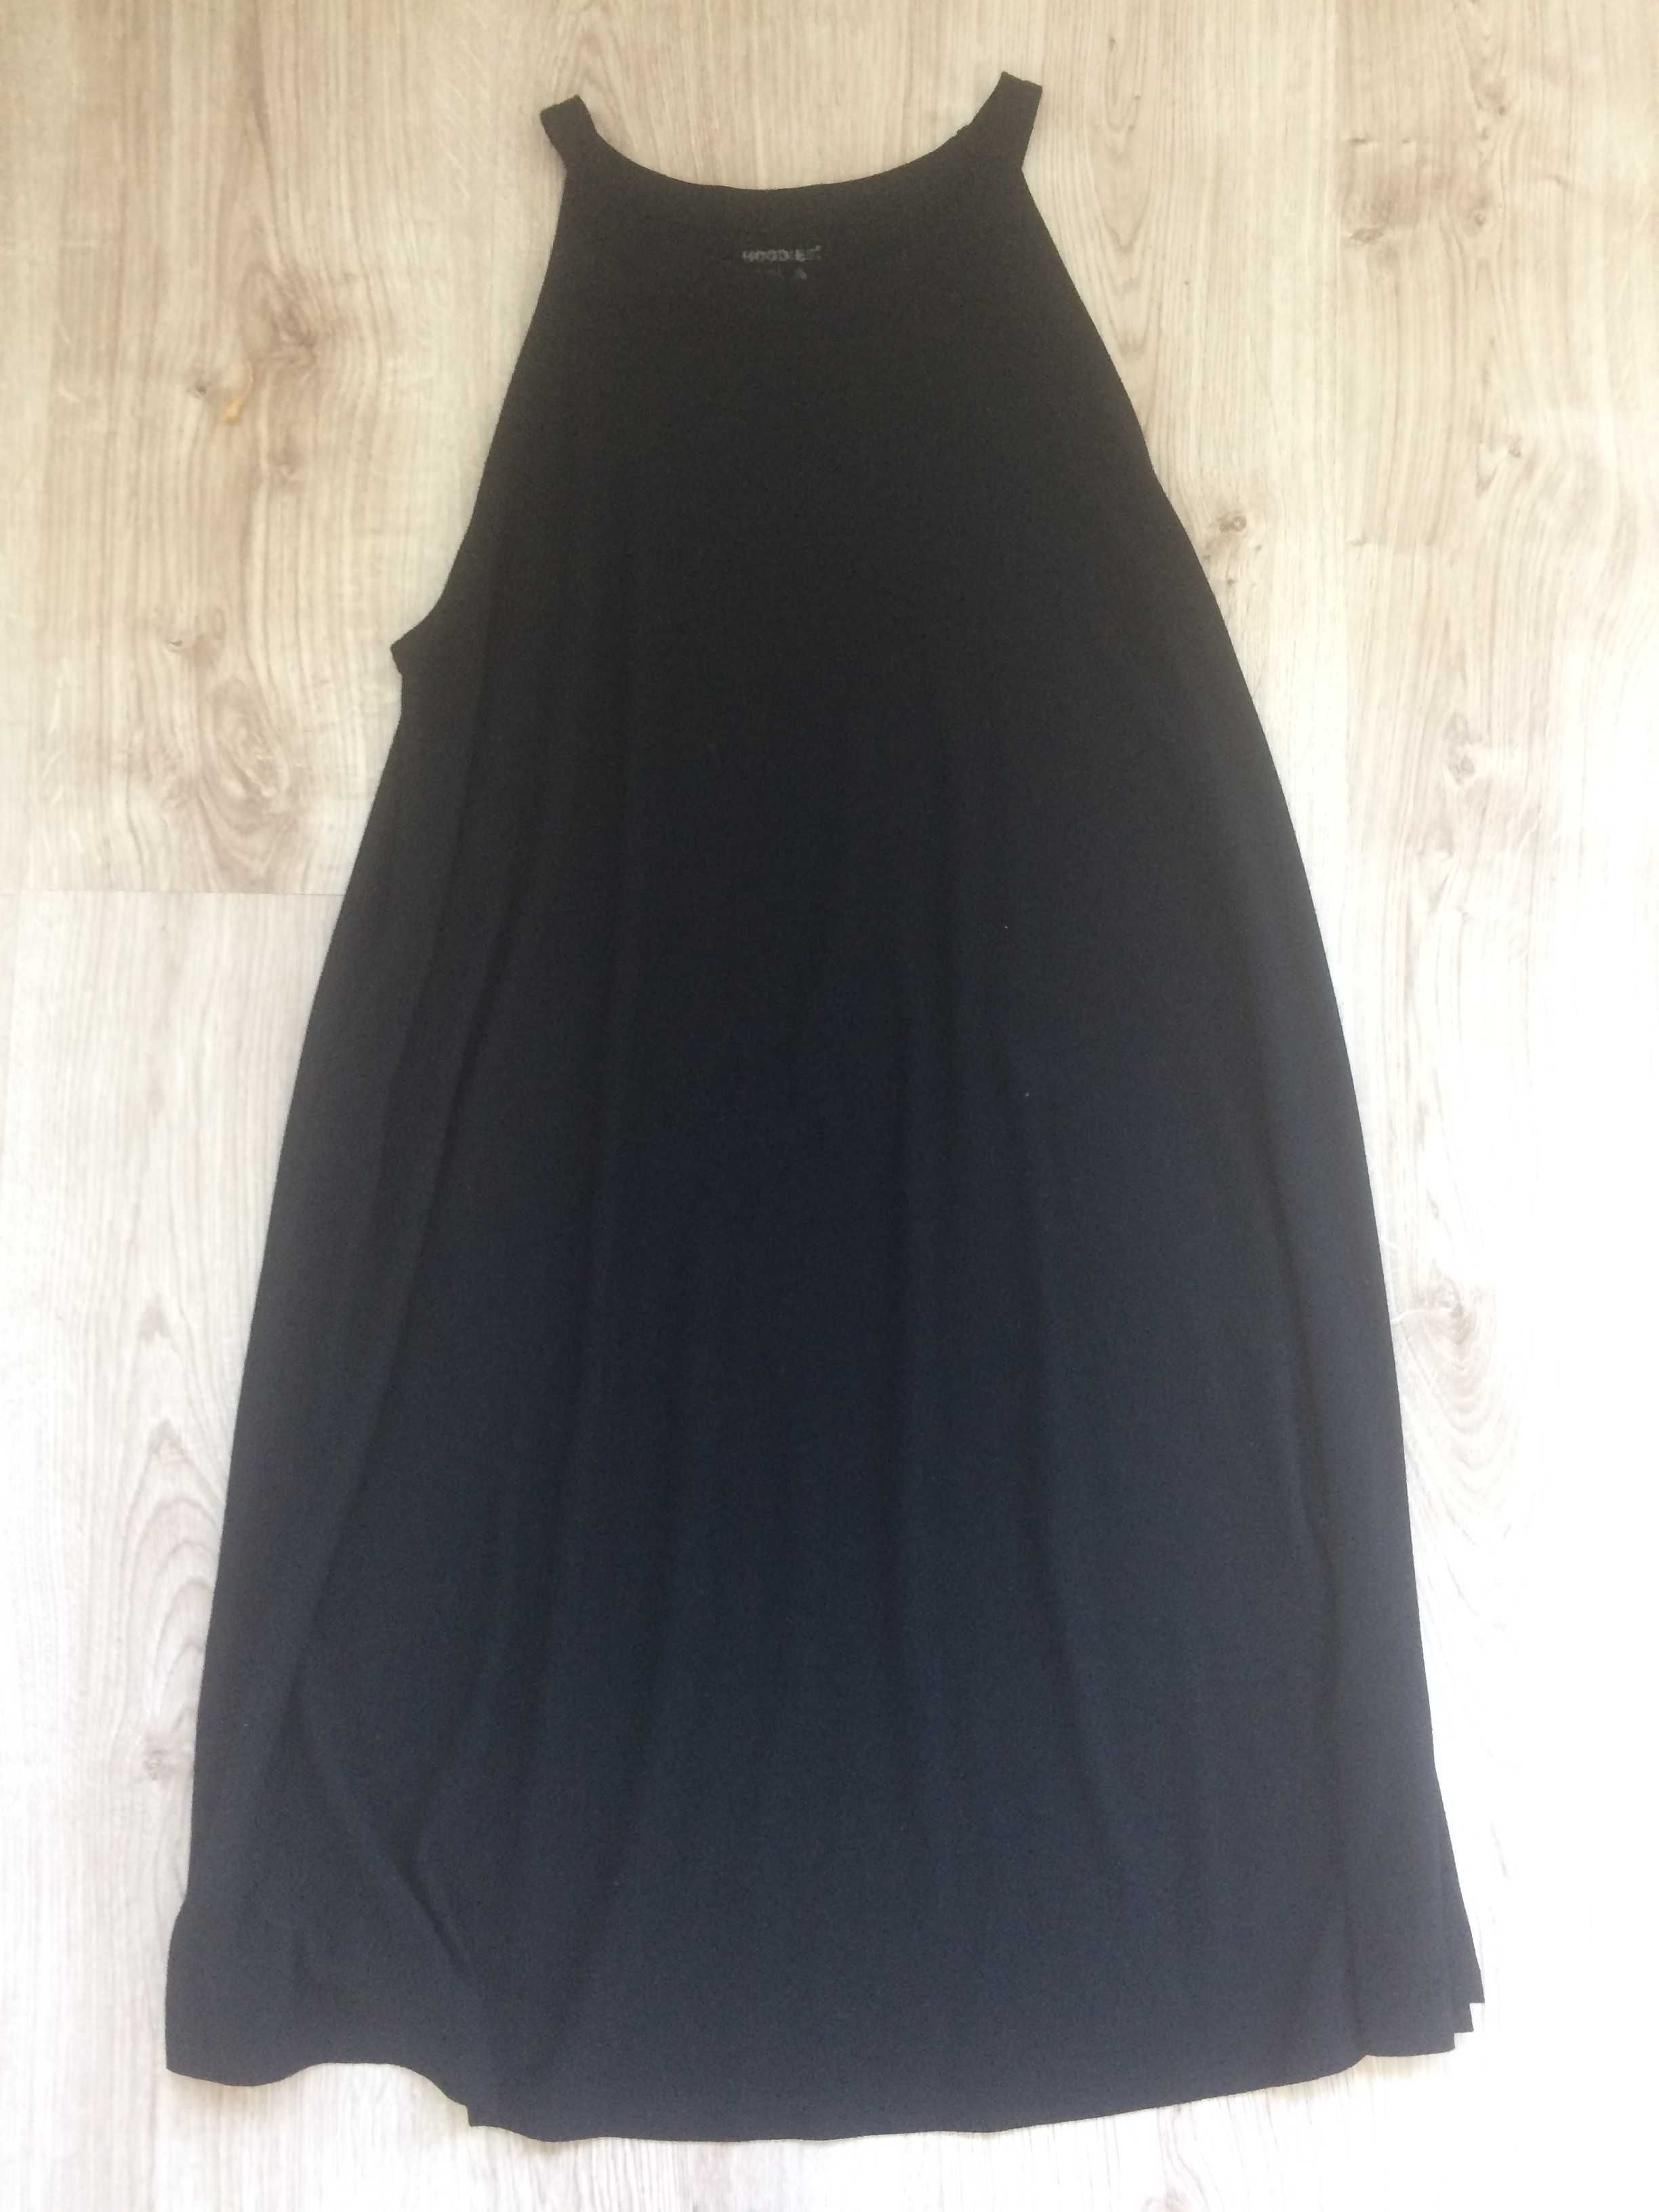 sukienka czarna marki hoodie S